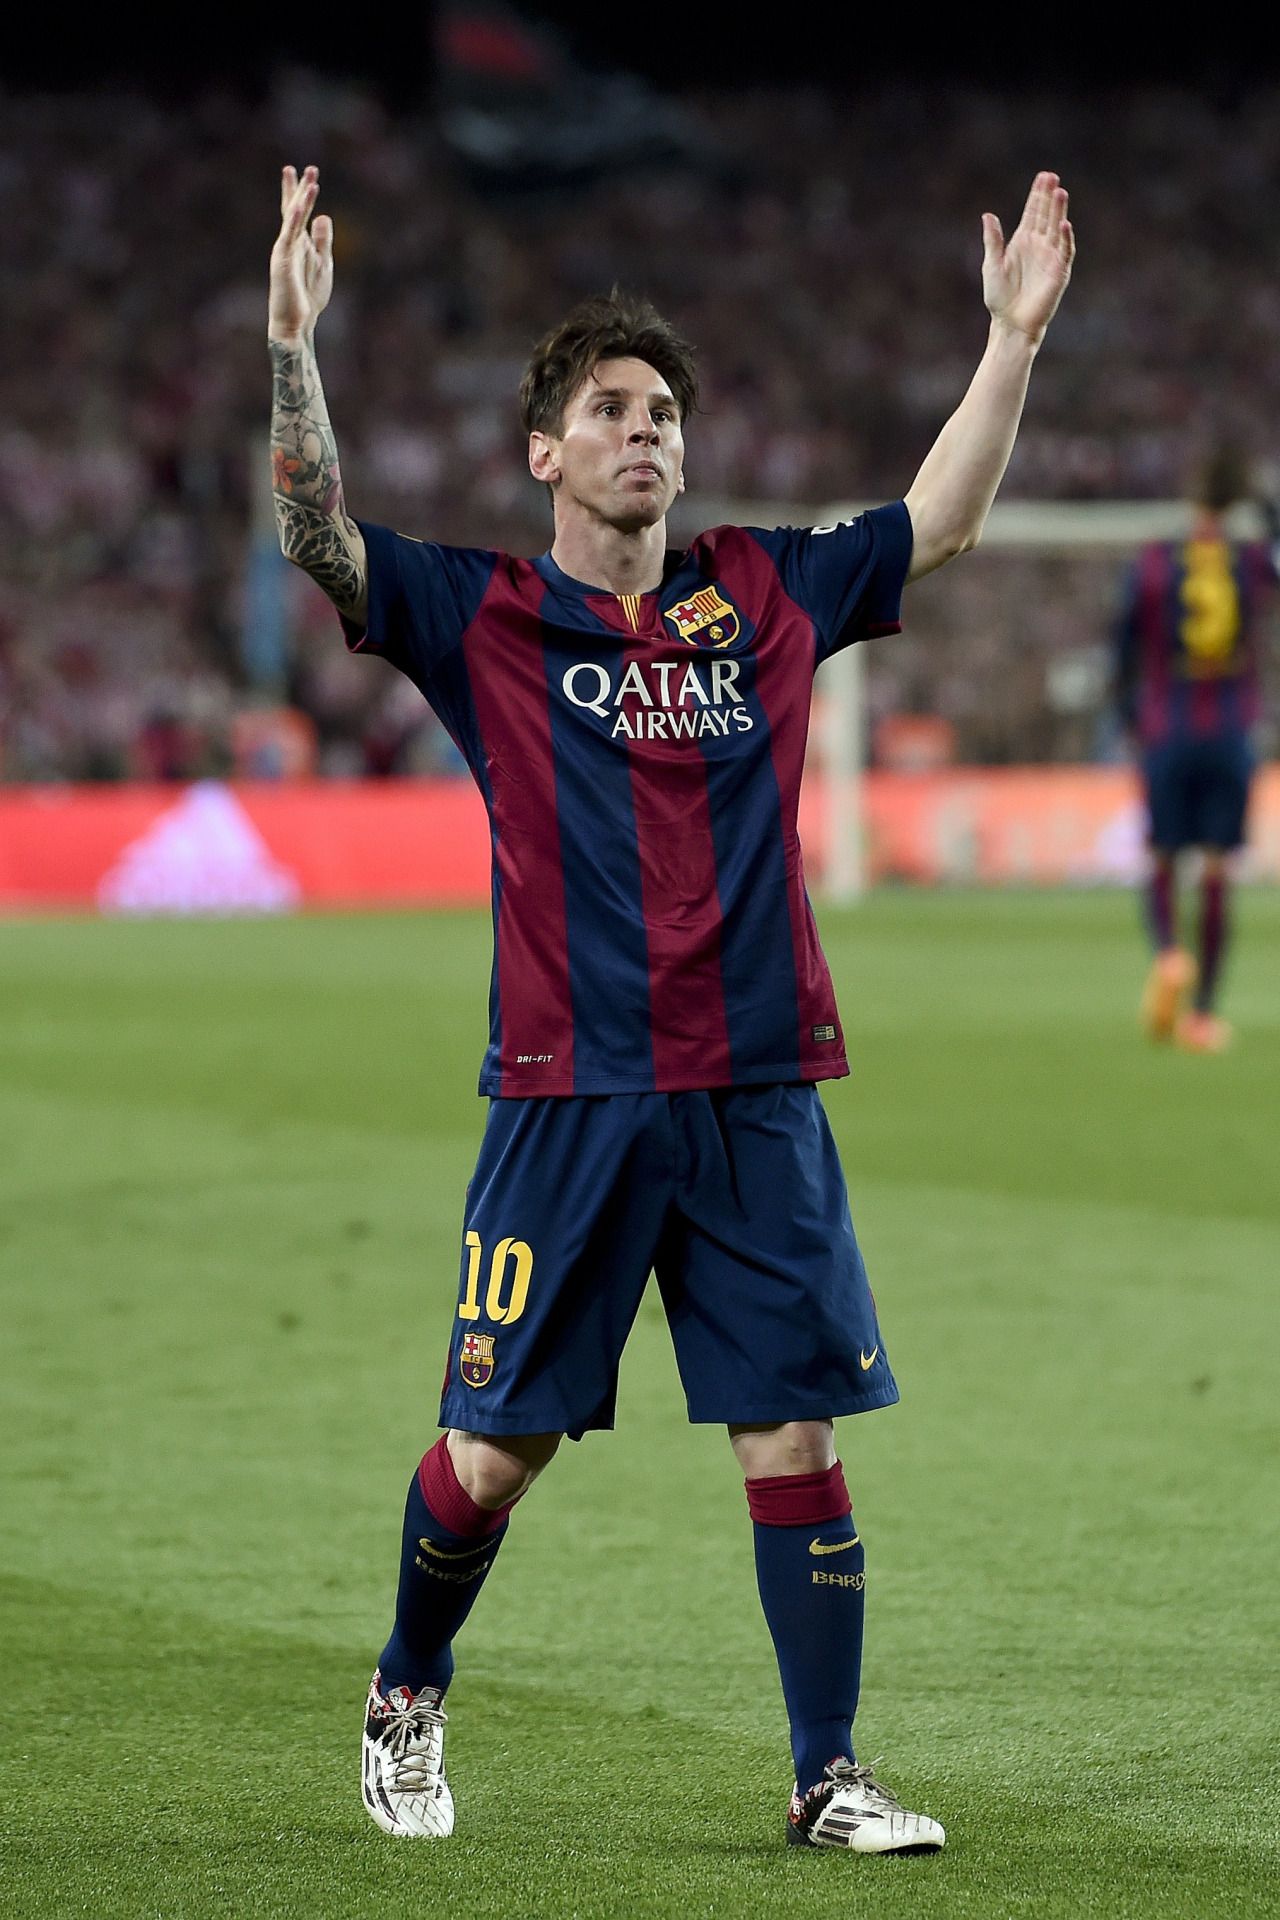  Leo Messi Hintergrundbild 1280x1920. football is my aesthetic. Lionel messi, Lionel messi barcelona, Cristiano ronaldo lionel messi